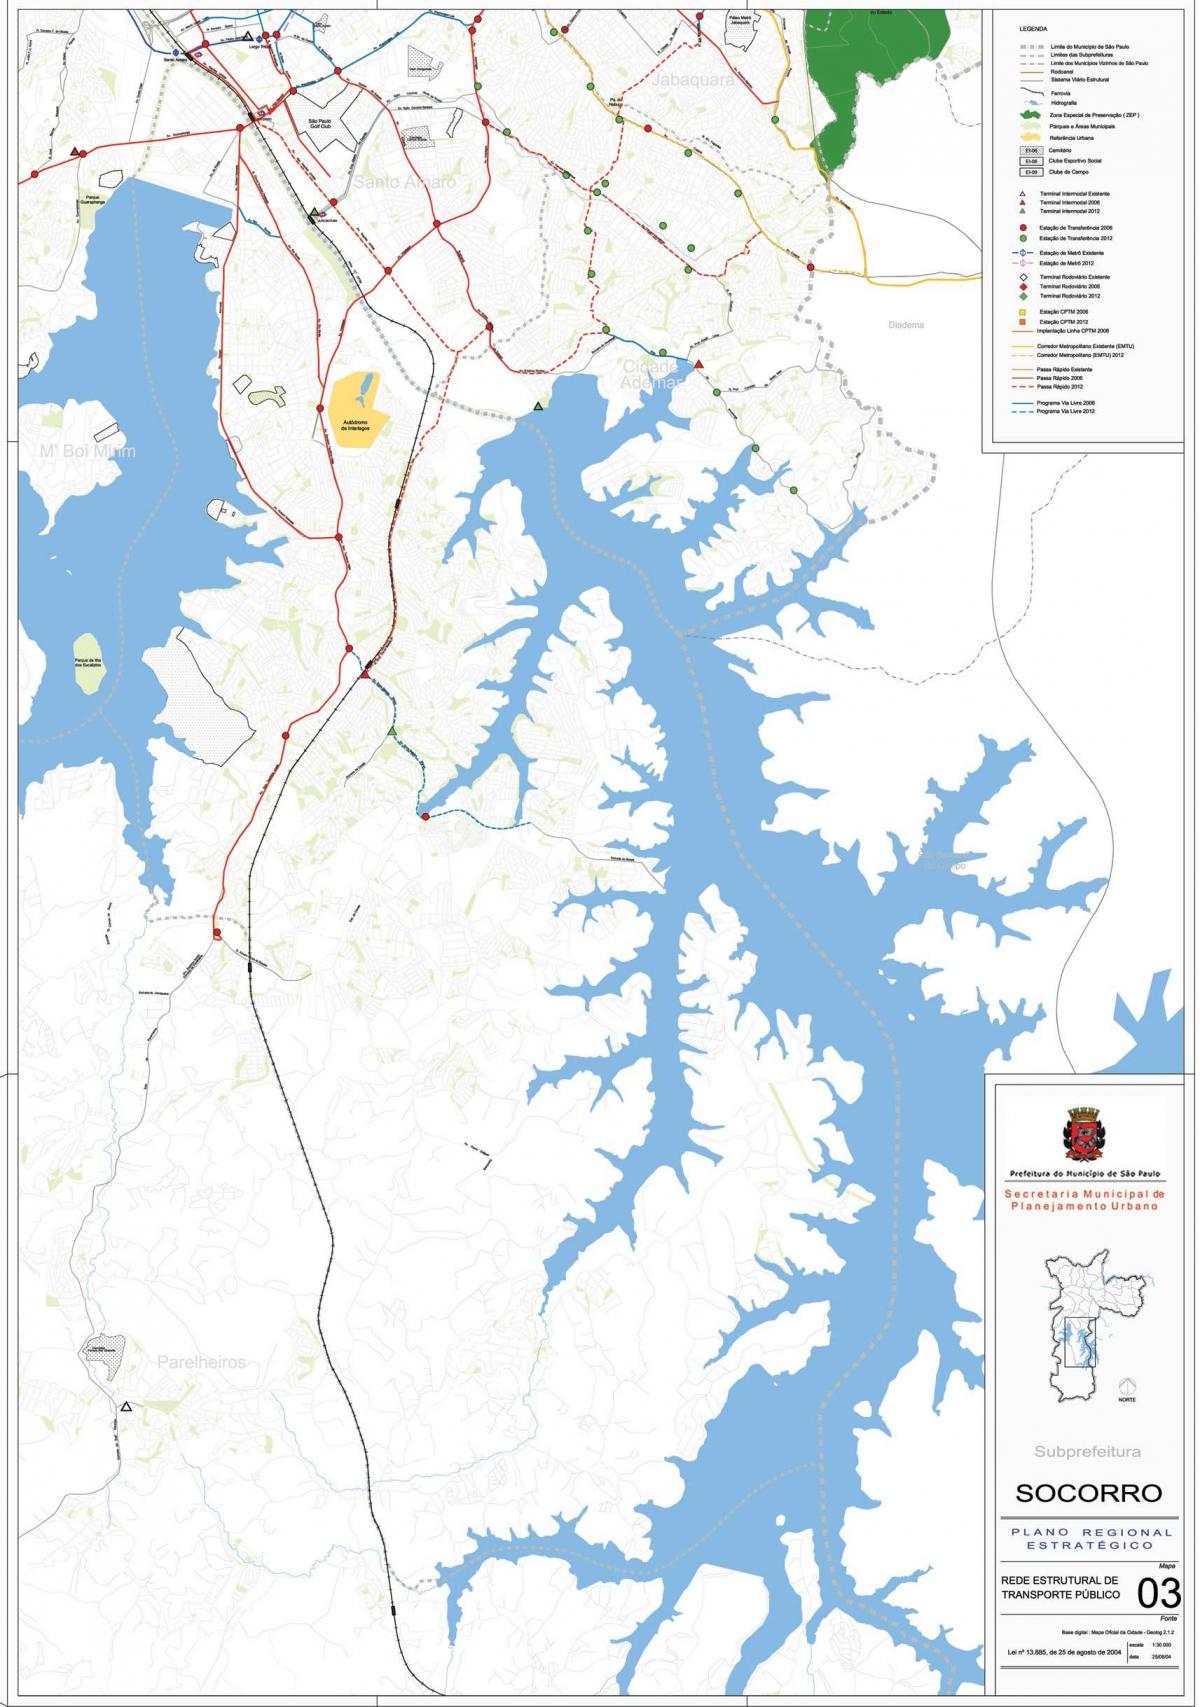 Քարտեզ Капела DOO Сокорро-Սան - հասարակական տրանսպորտը